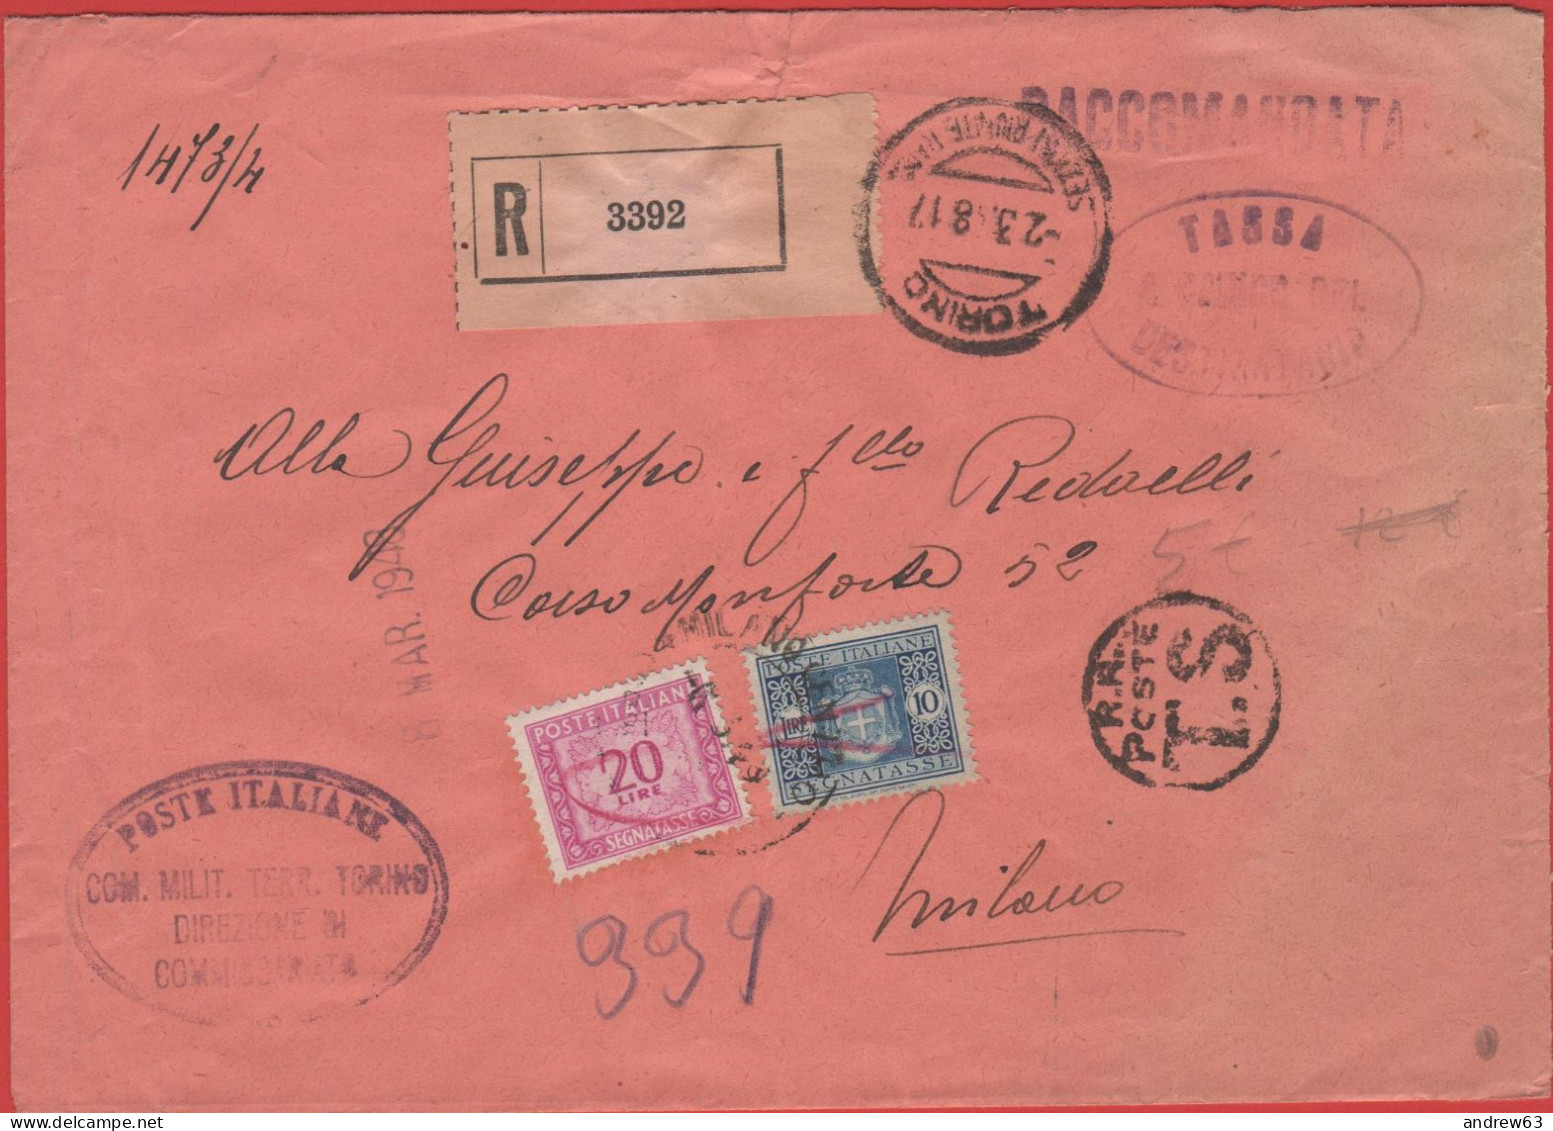 ITALIA - Storia Postale Repubblica - 1948 - 20 + 10 Segnatasse Senza Fasci - Tassa A Carico Del Destinatario - Raccomand - Postage Due